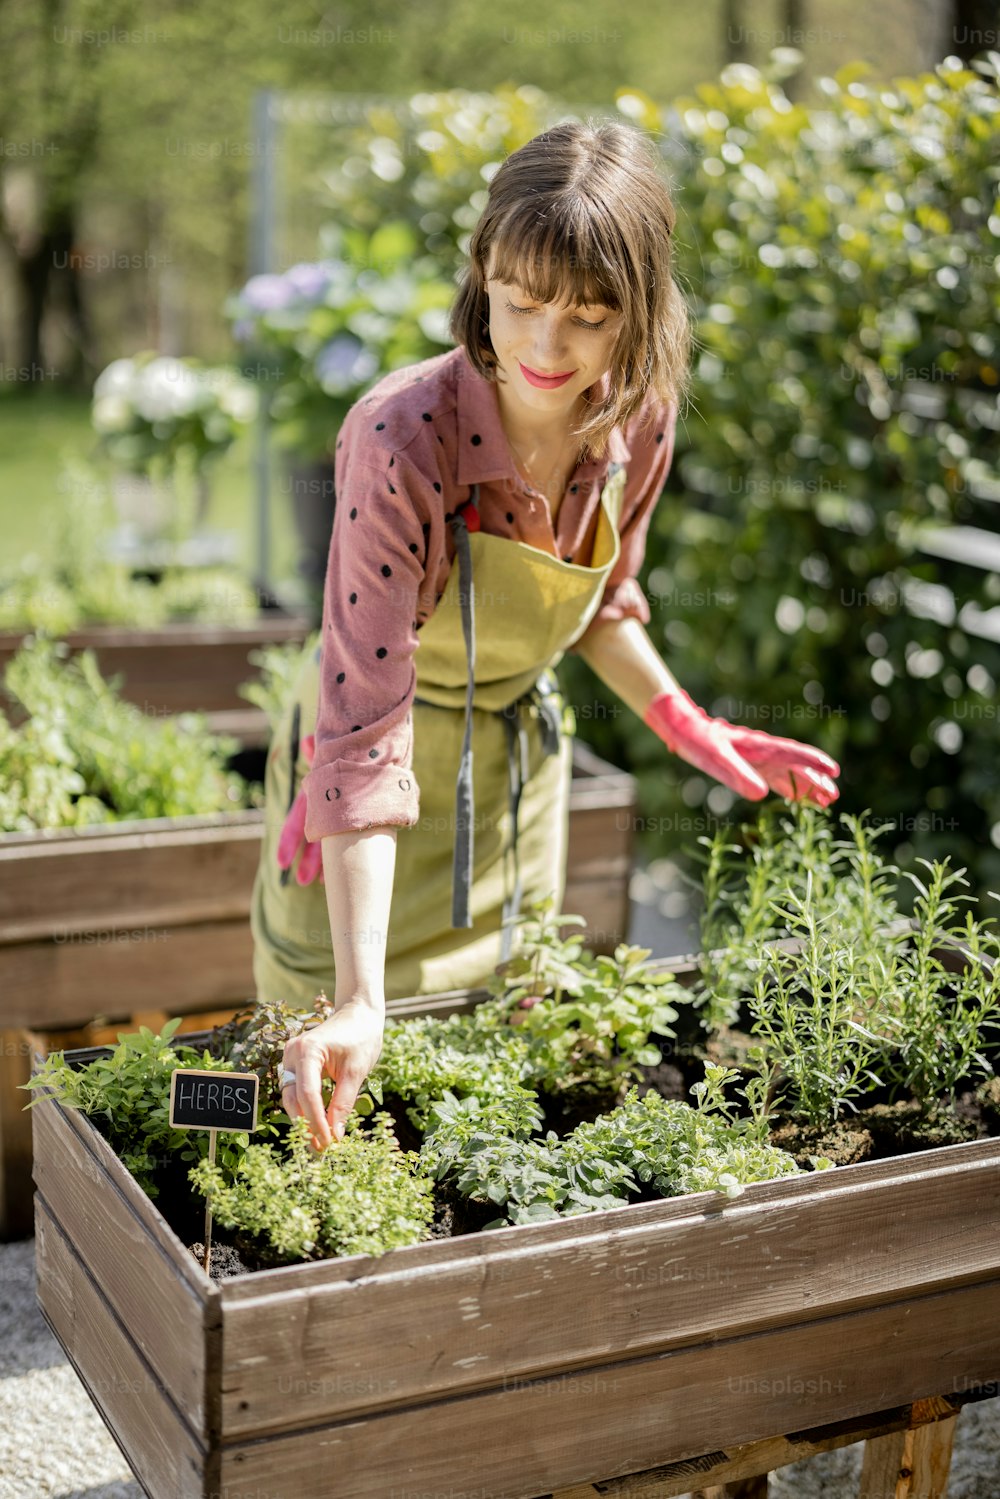 カントリーハウスの裏庭にある家庭菜園でハーブを育てている若い女性。生態学と自家栽培の概念